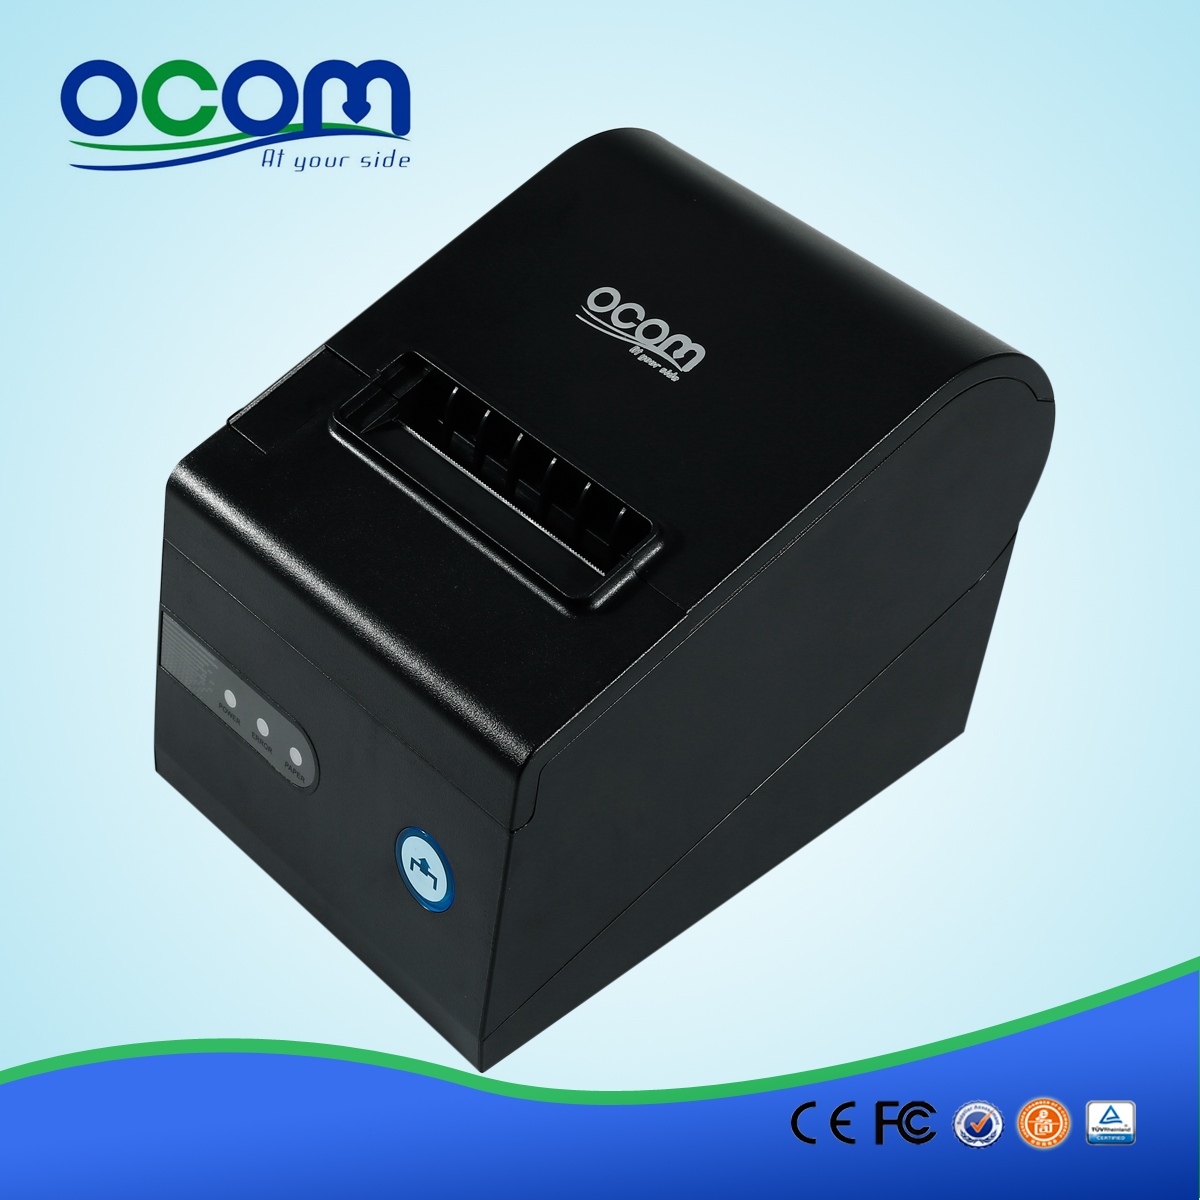 OCPP-804 desktop impressora de recibos térmica com porta USB Paralela Serial